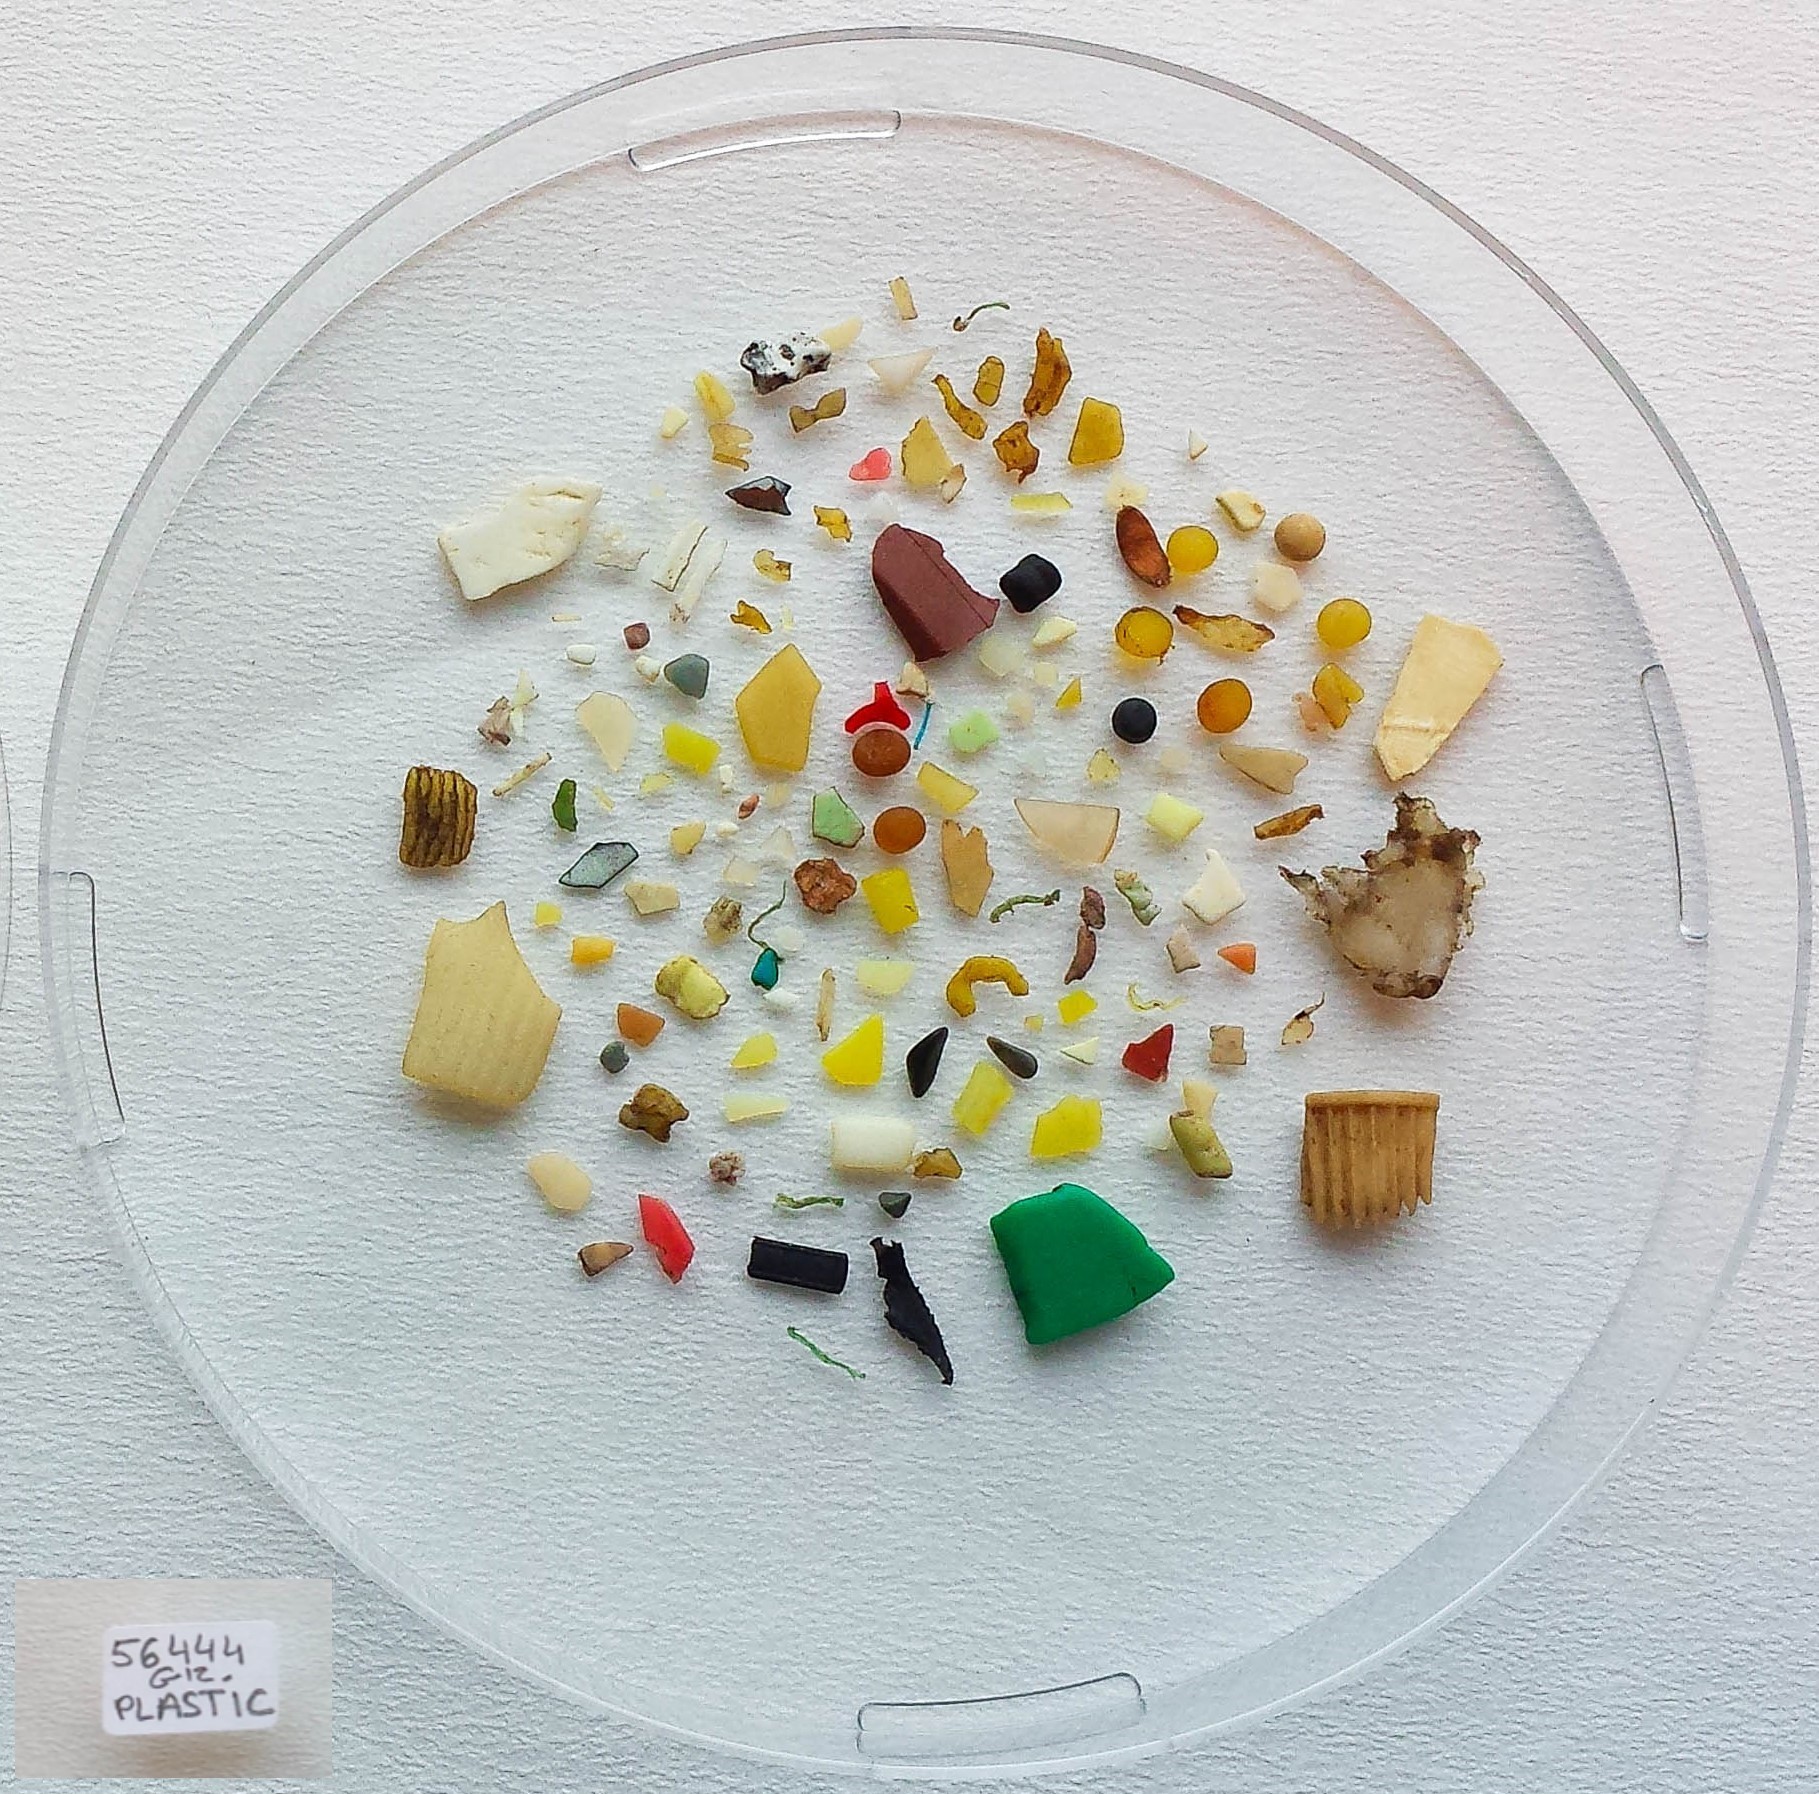 Et eksempel pa hvor meget plastik der kan ligge i maven pa en mallemuk foto Jakob Strand Aarhus Univeristet